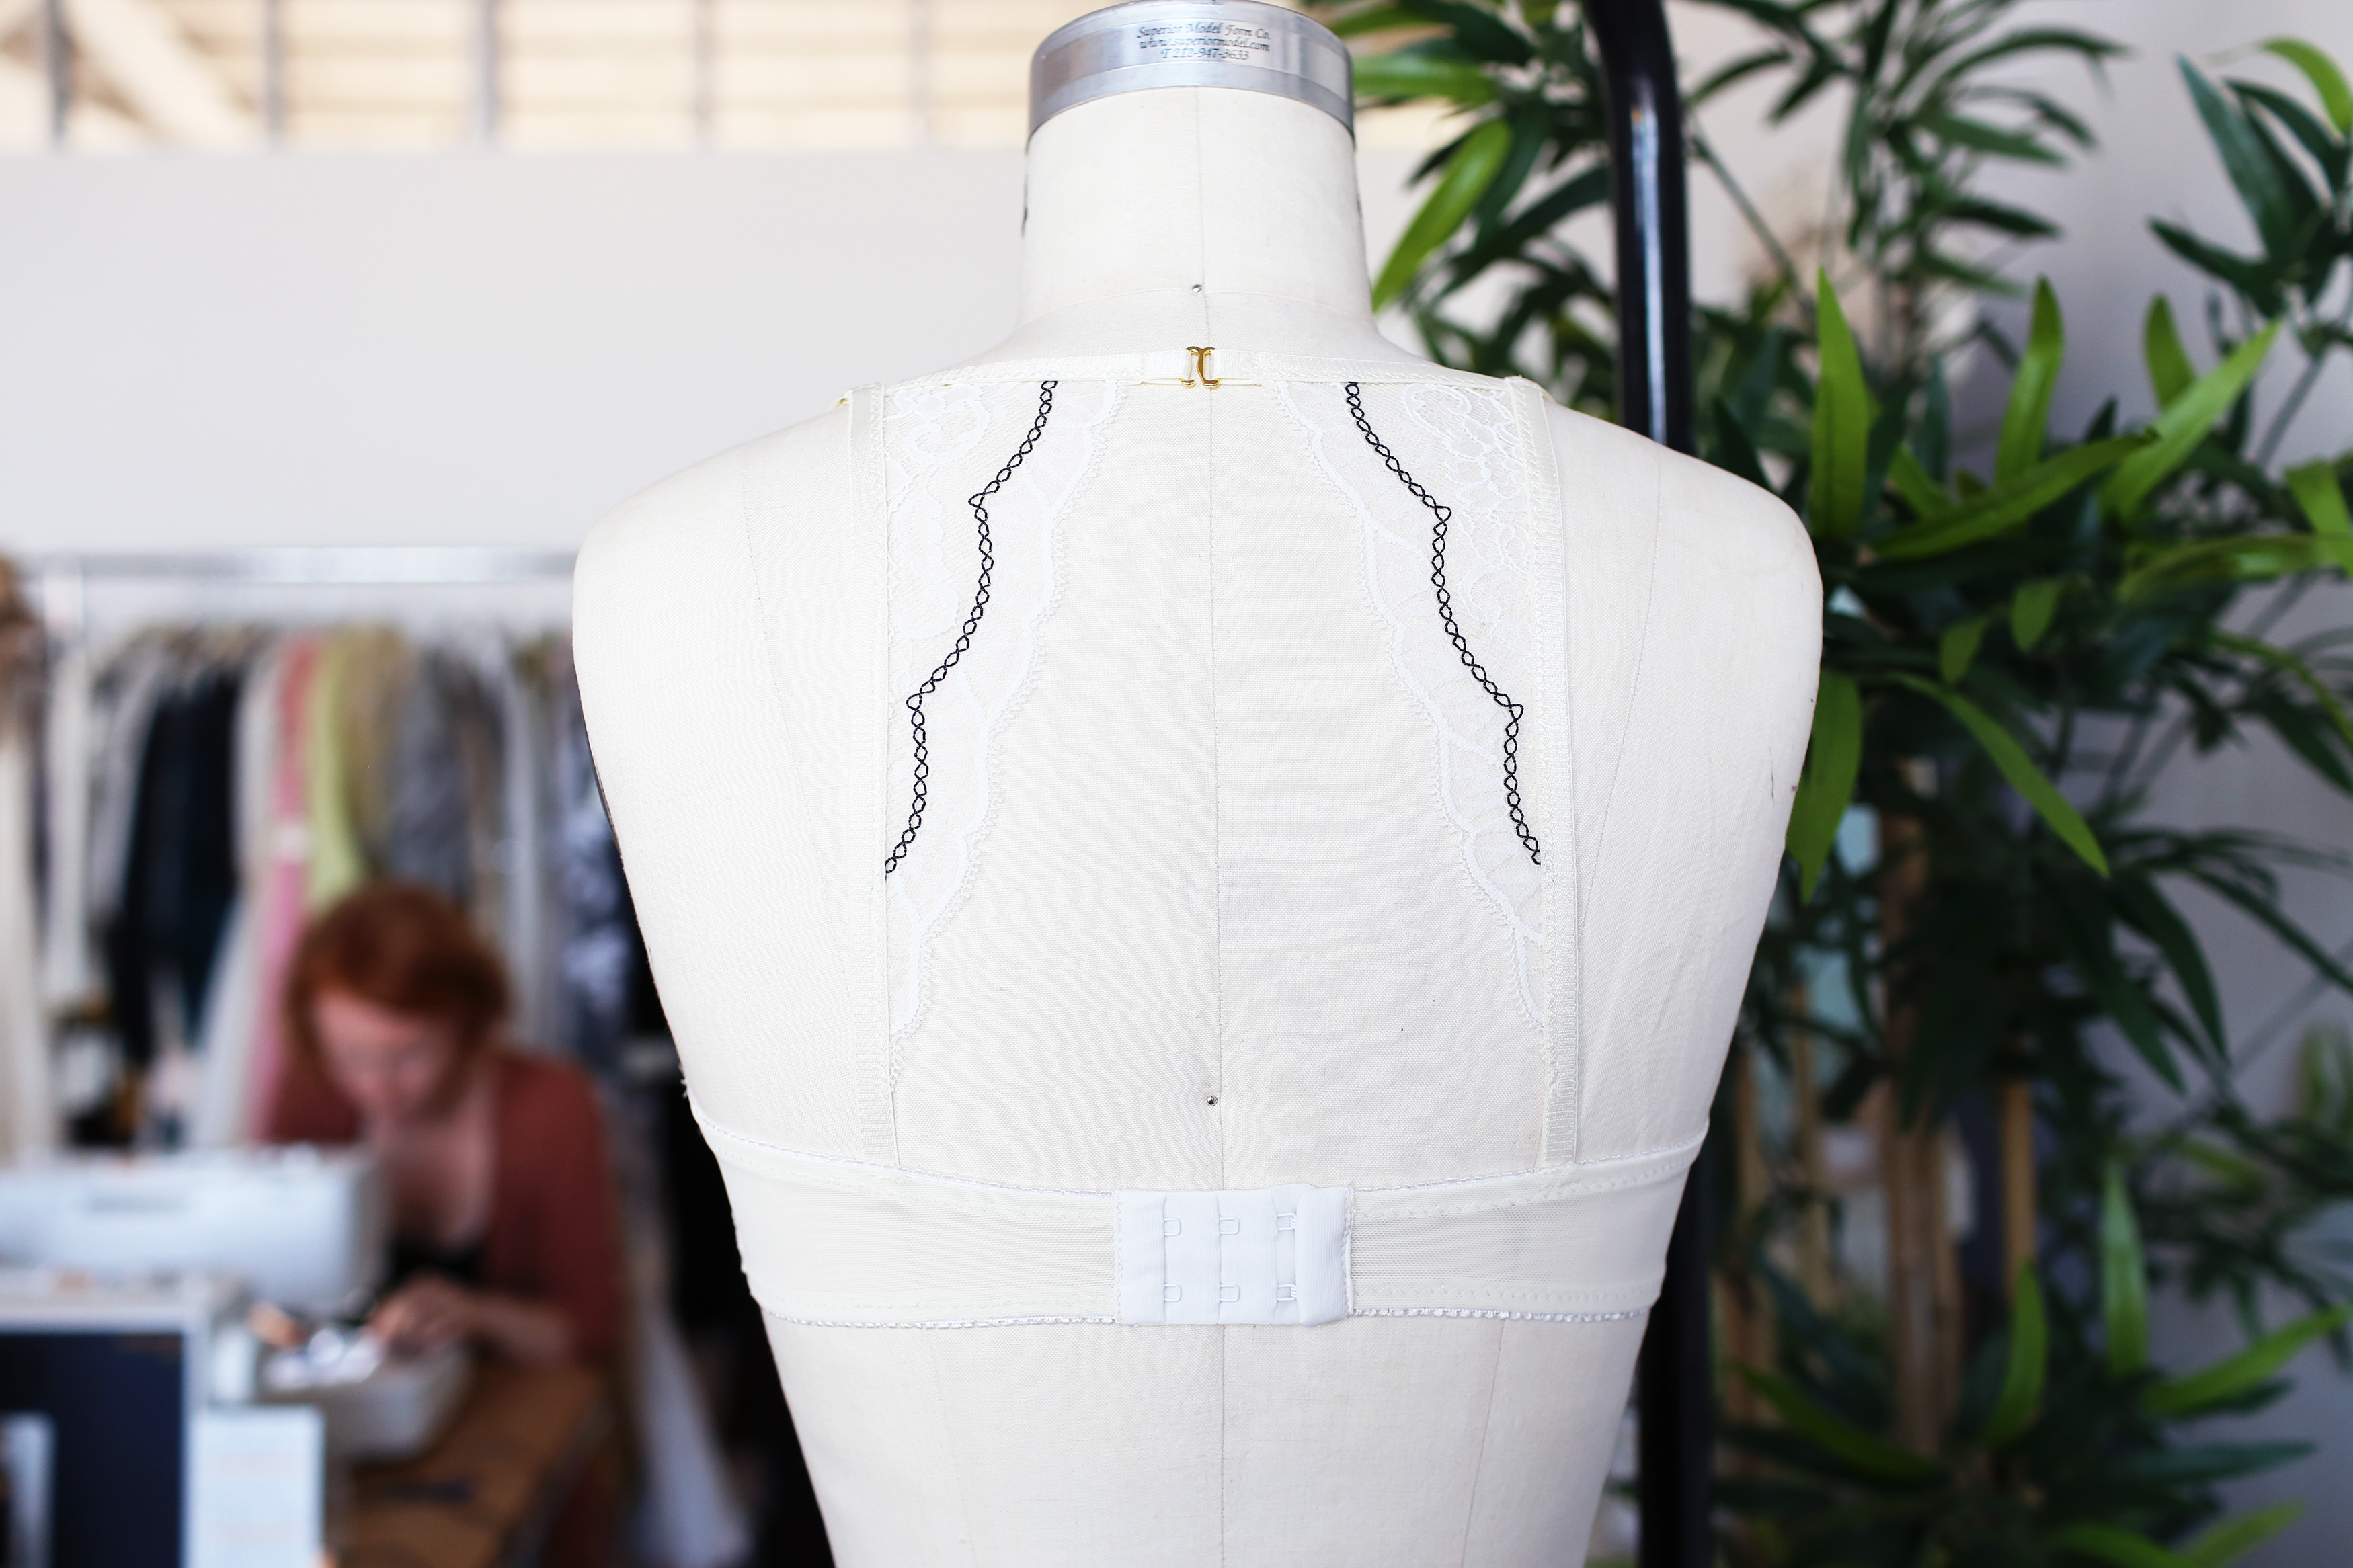 offwhite-balconette bralette tailor made shop bramaking